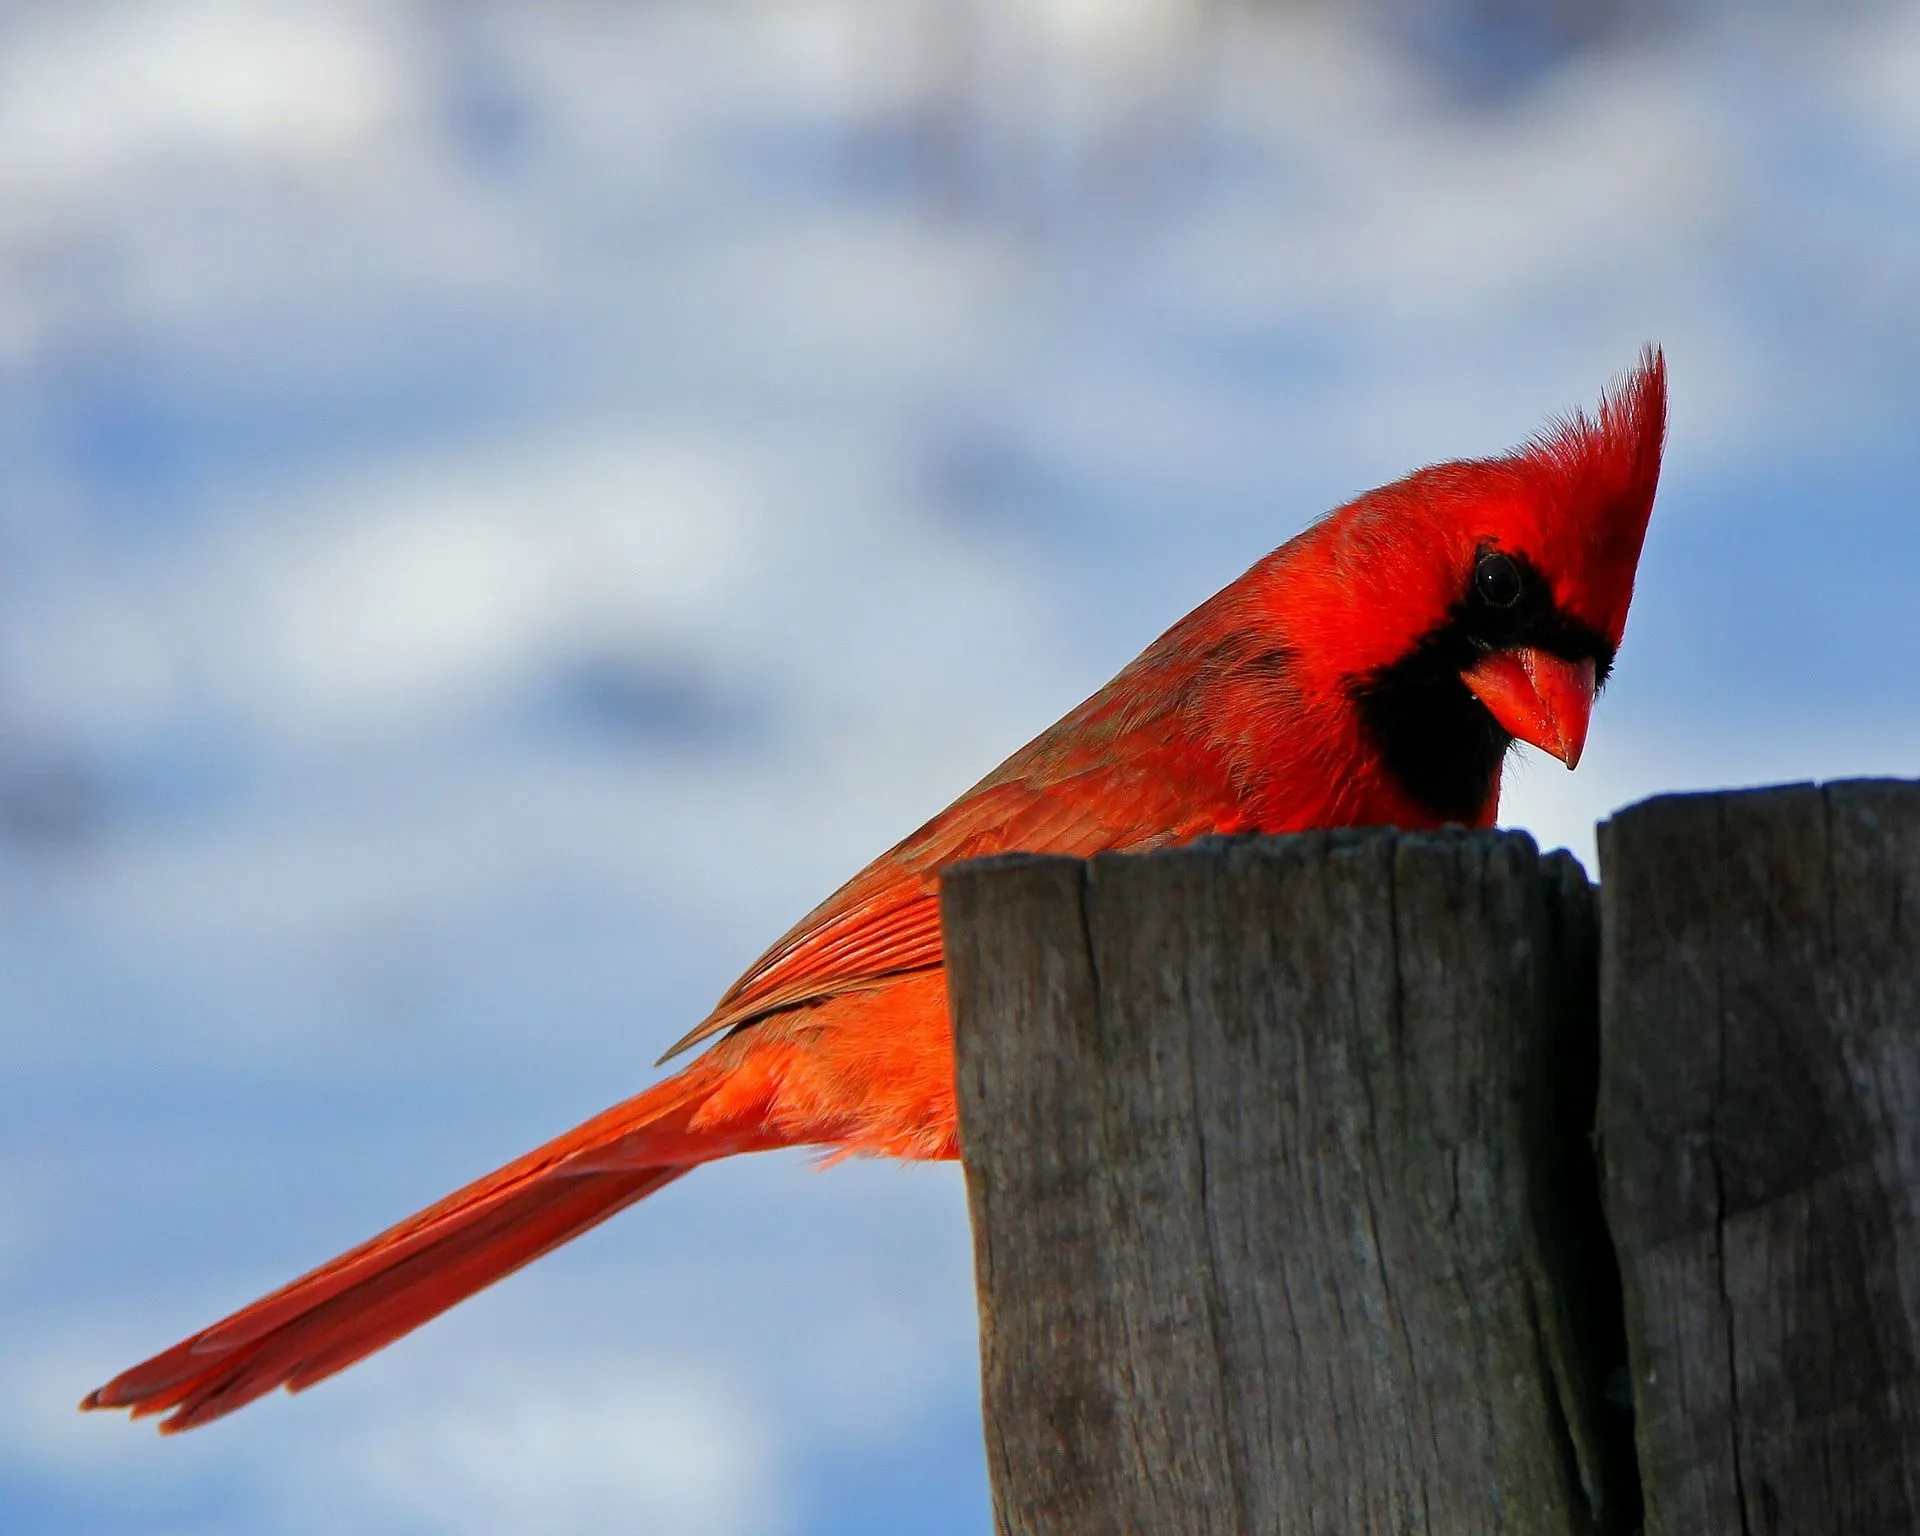 scientific name of the northern cardinal is cardinalis cardinalis